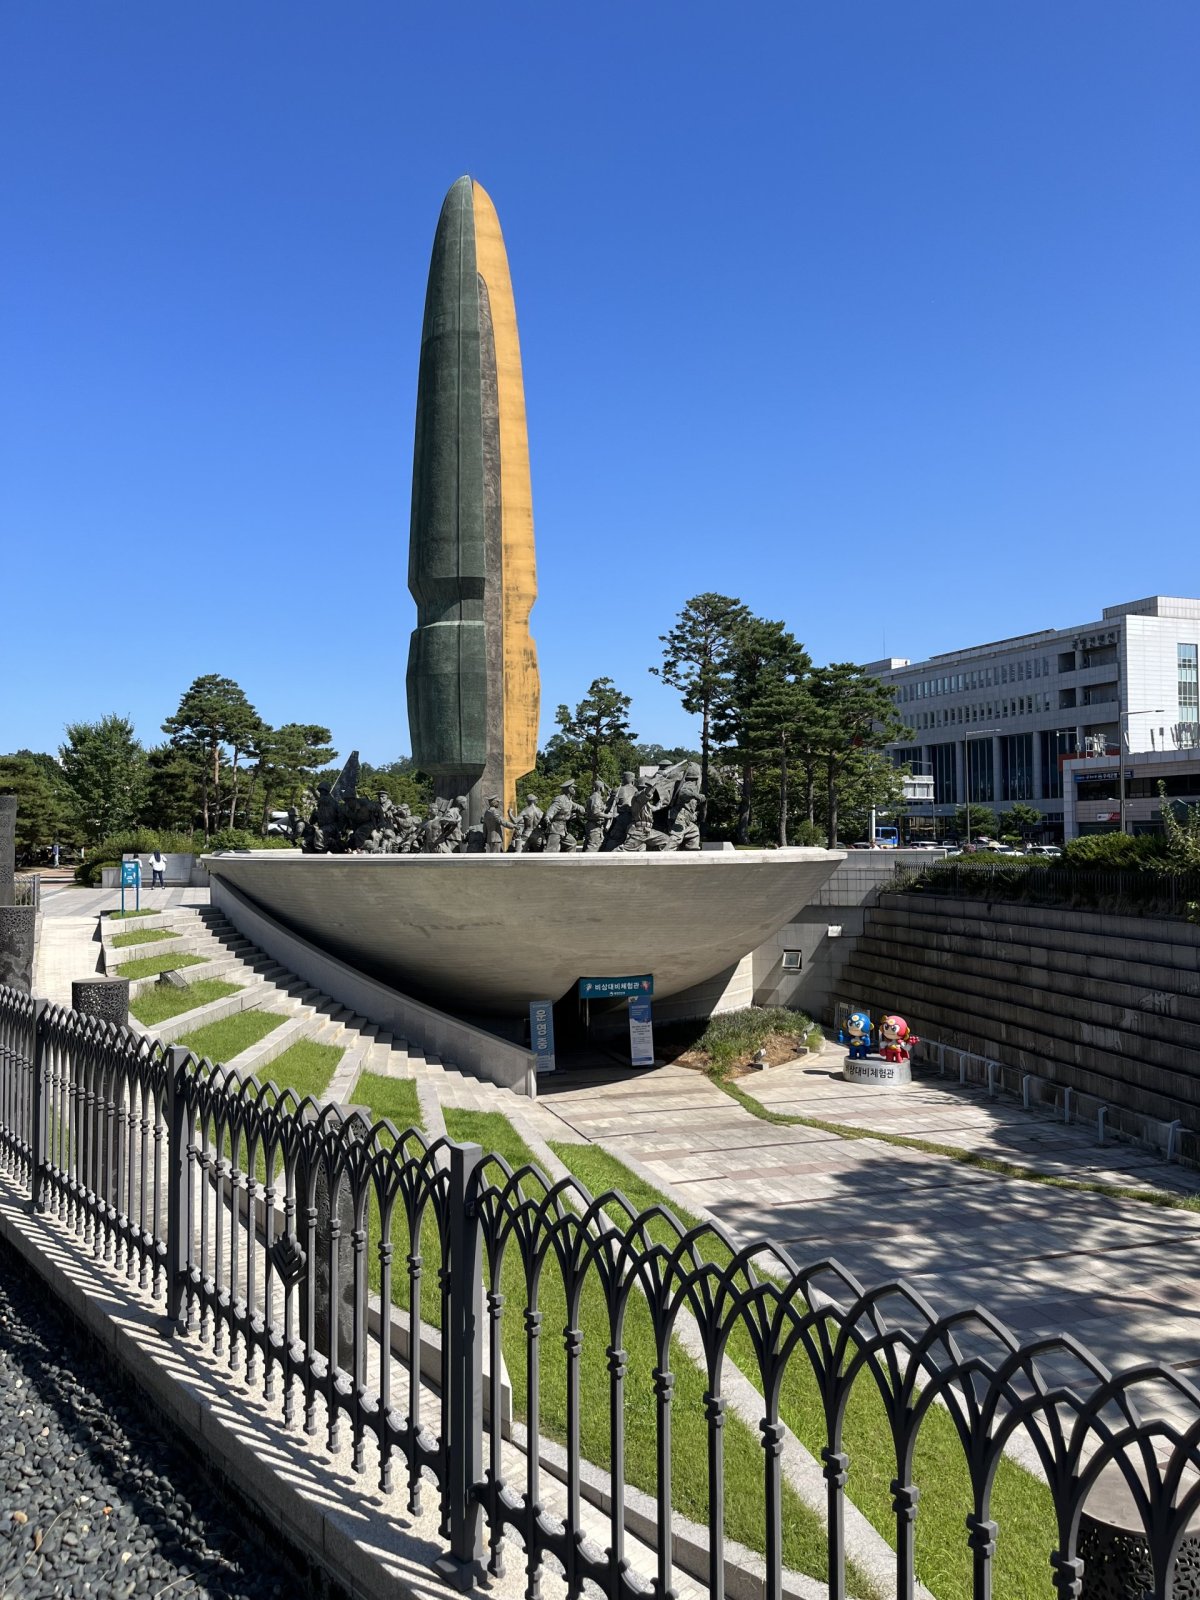 War memorial museum